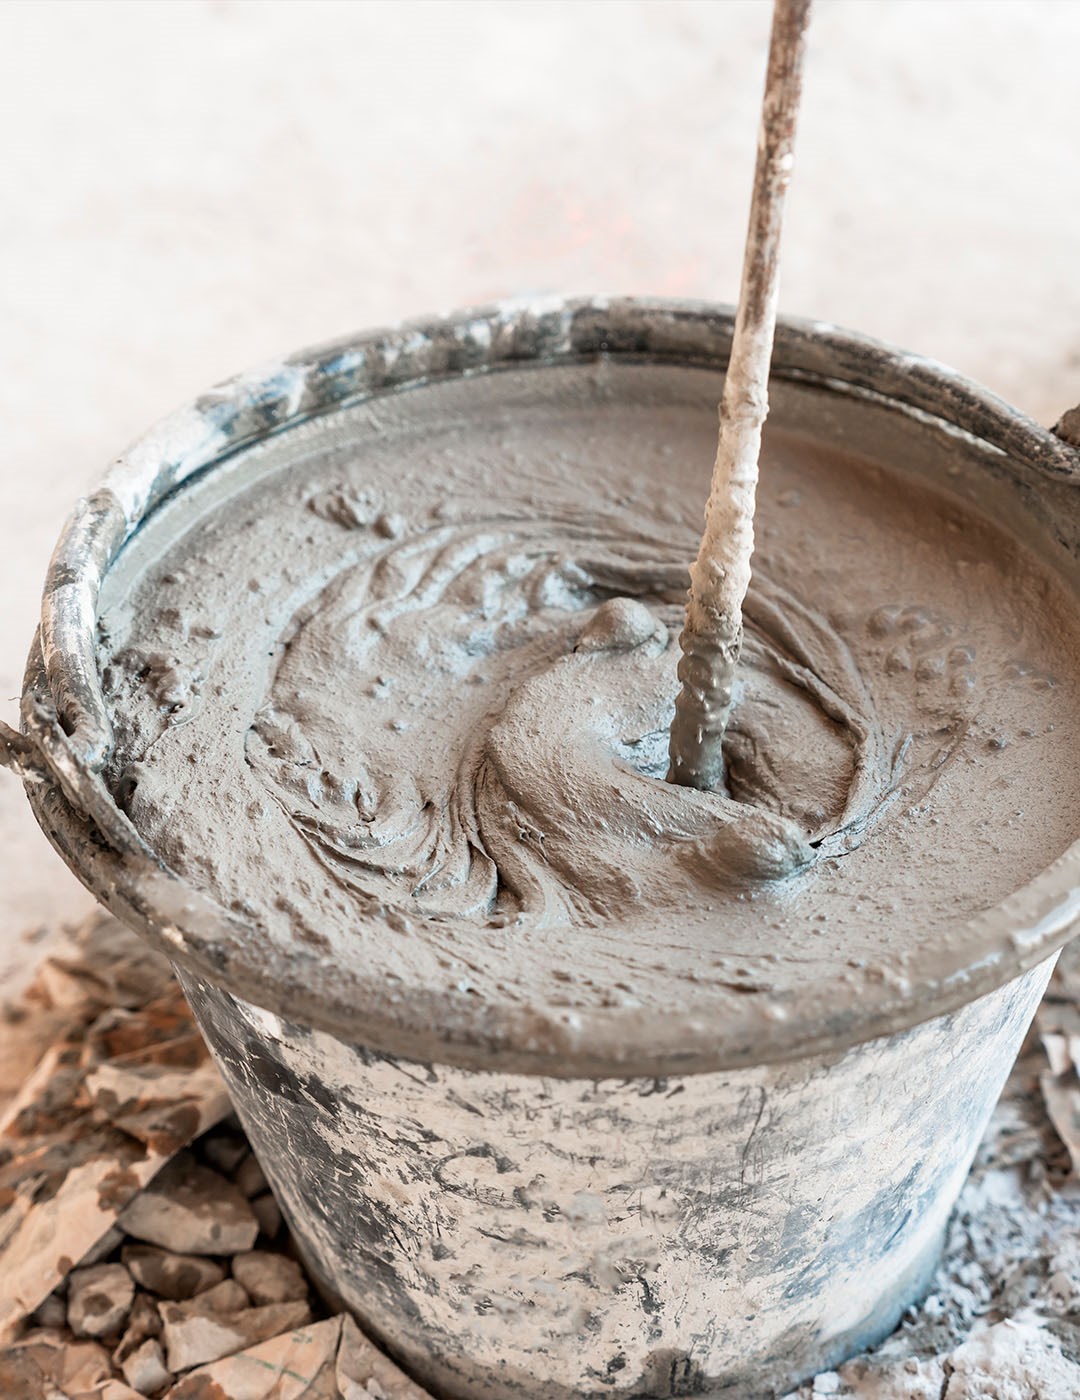 Seau couvert de résidus de ciment contenant du béton gris frais et un batteur utilisé pour mélanger, sur un fond flou avec des débris.